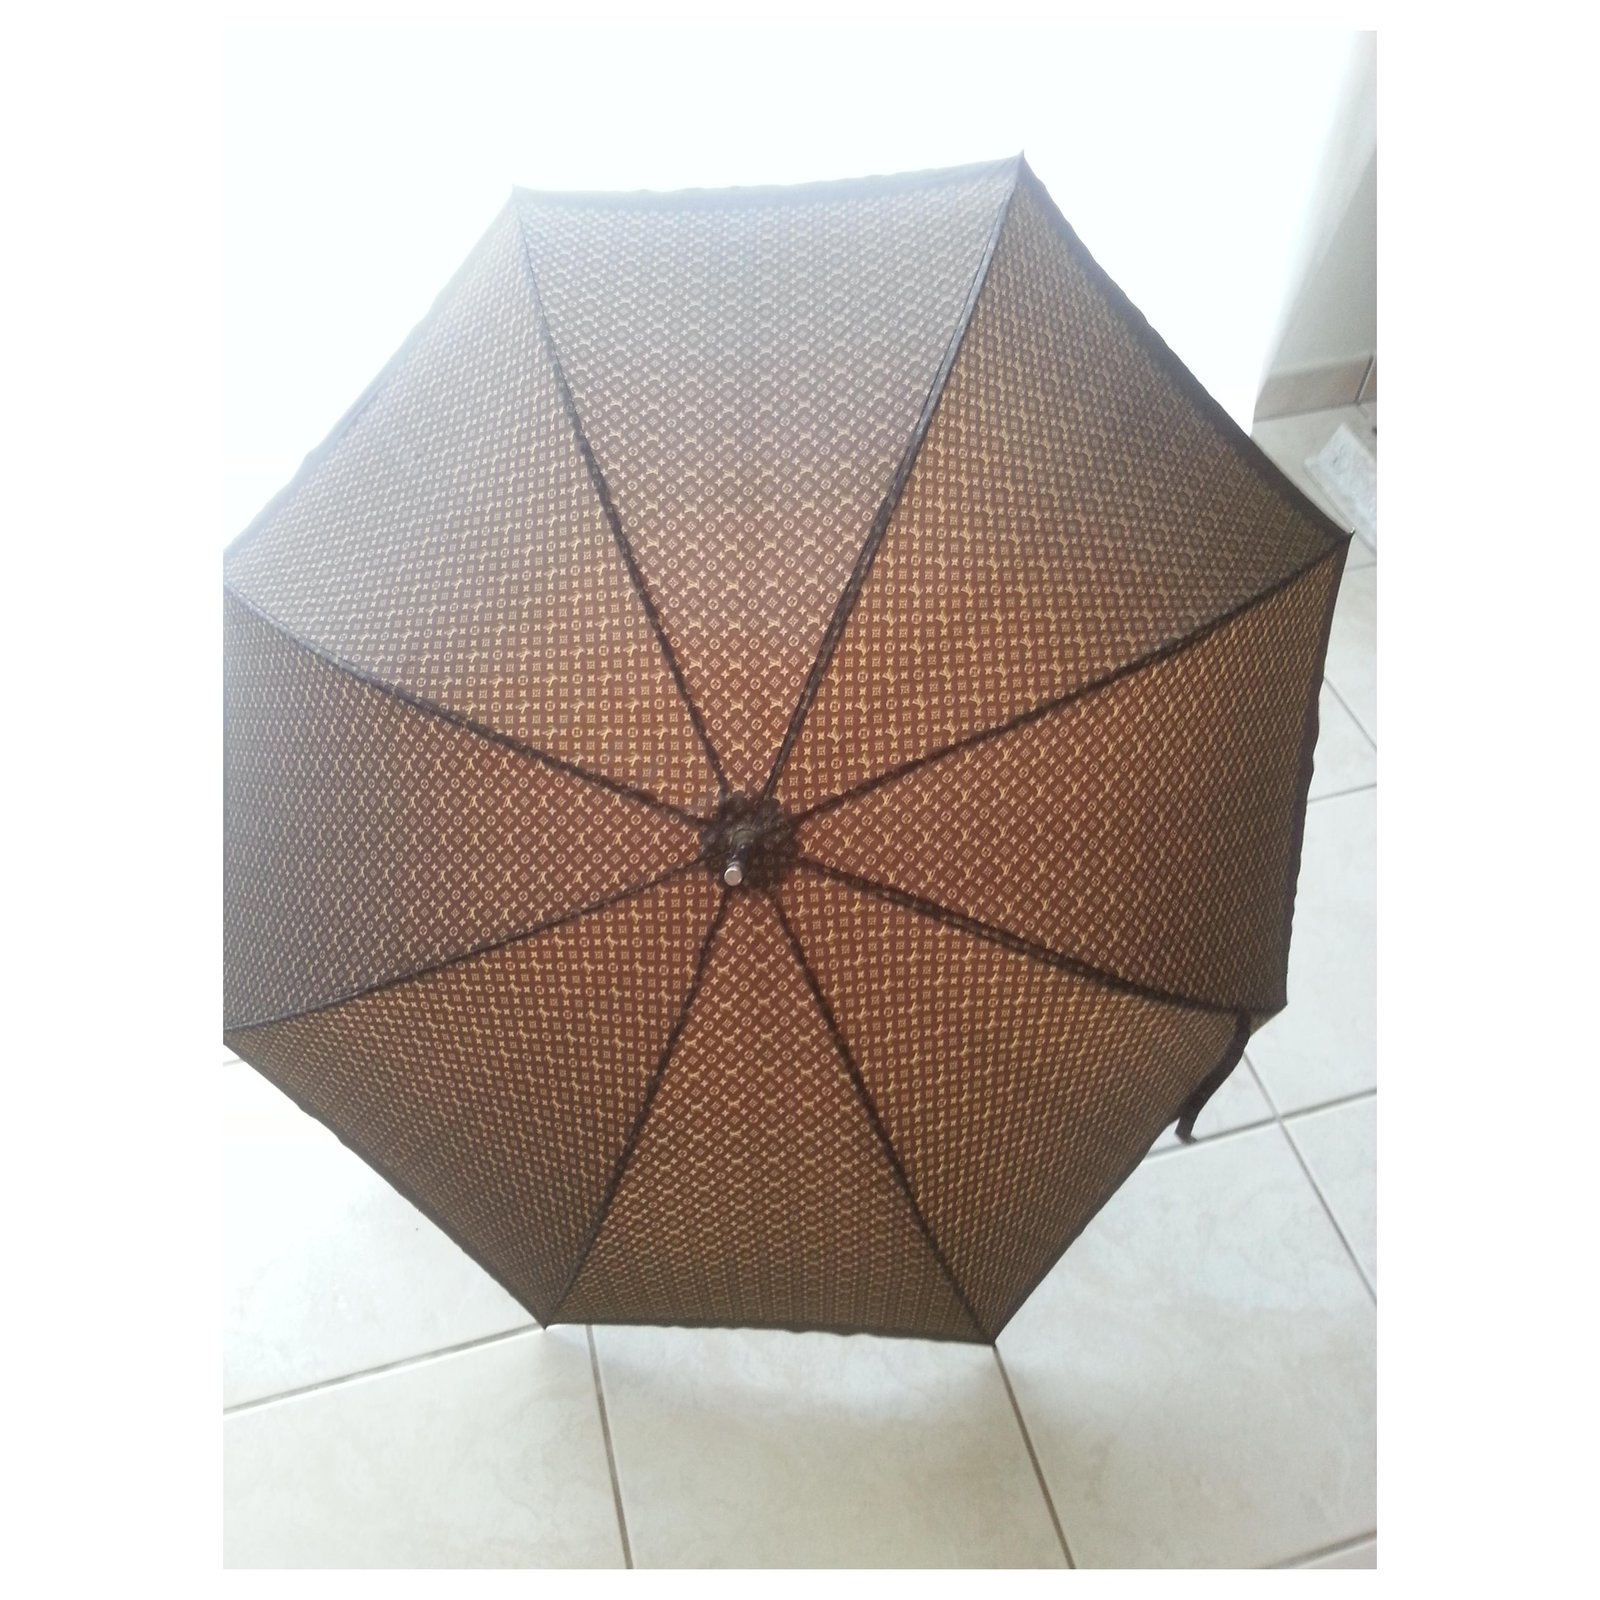 Louis Vuitton Monogram Trimmed Umbrella